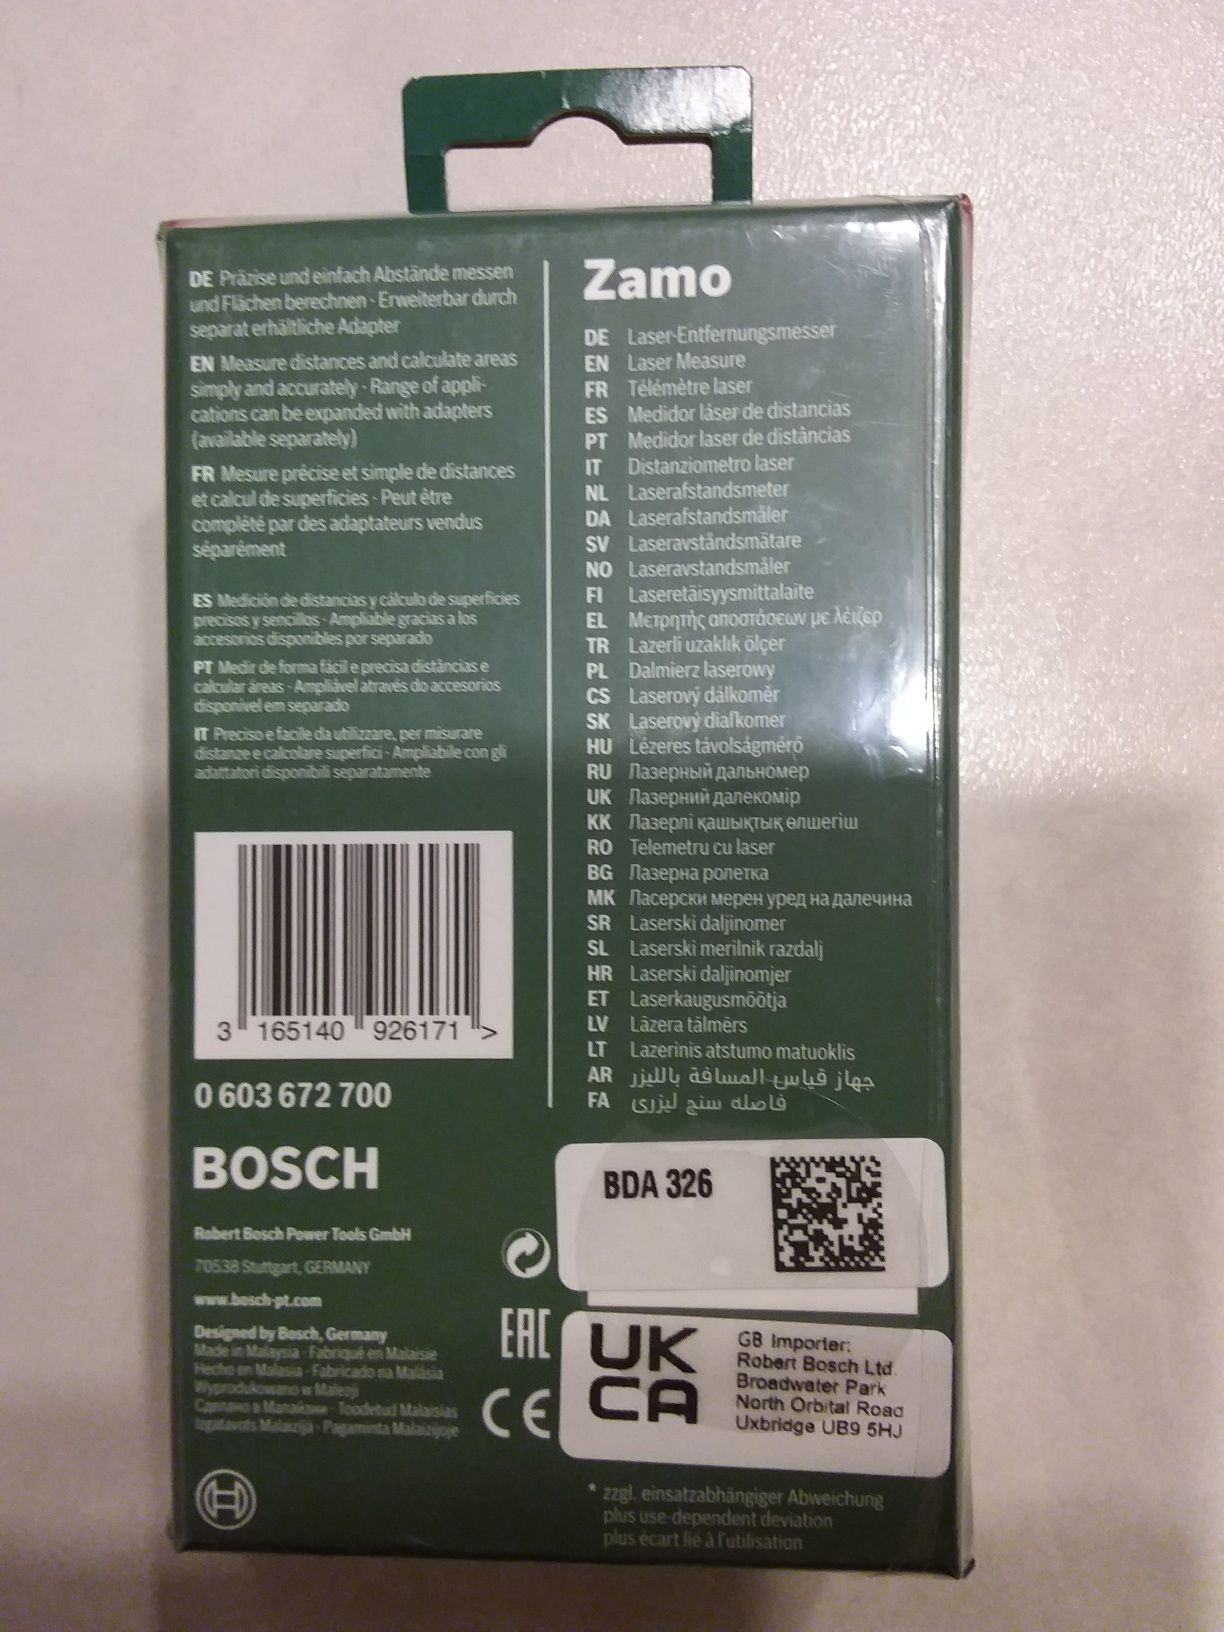 Sprzedam dalmierz laserowy Bosch Zamo